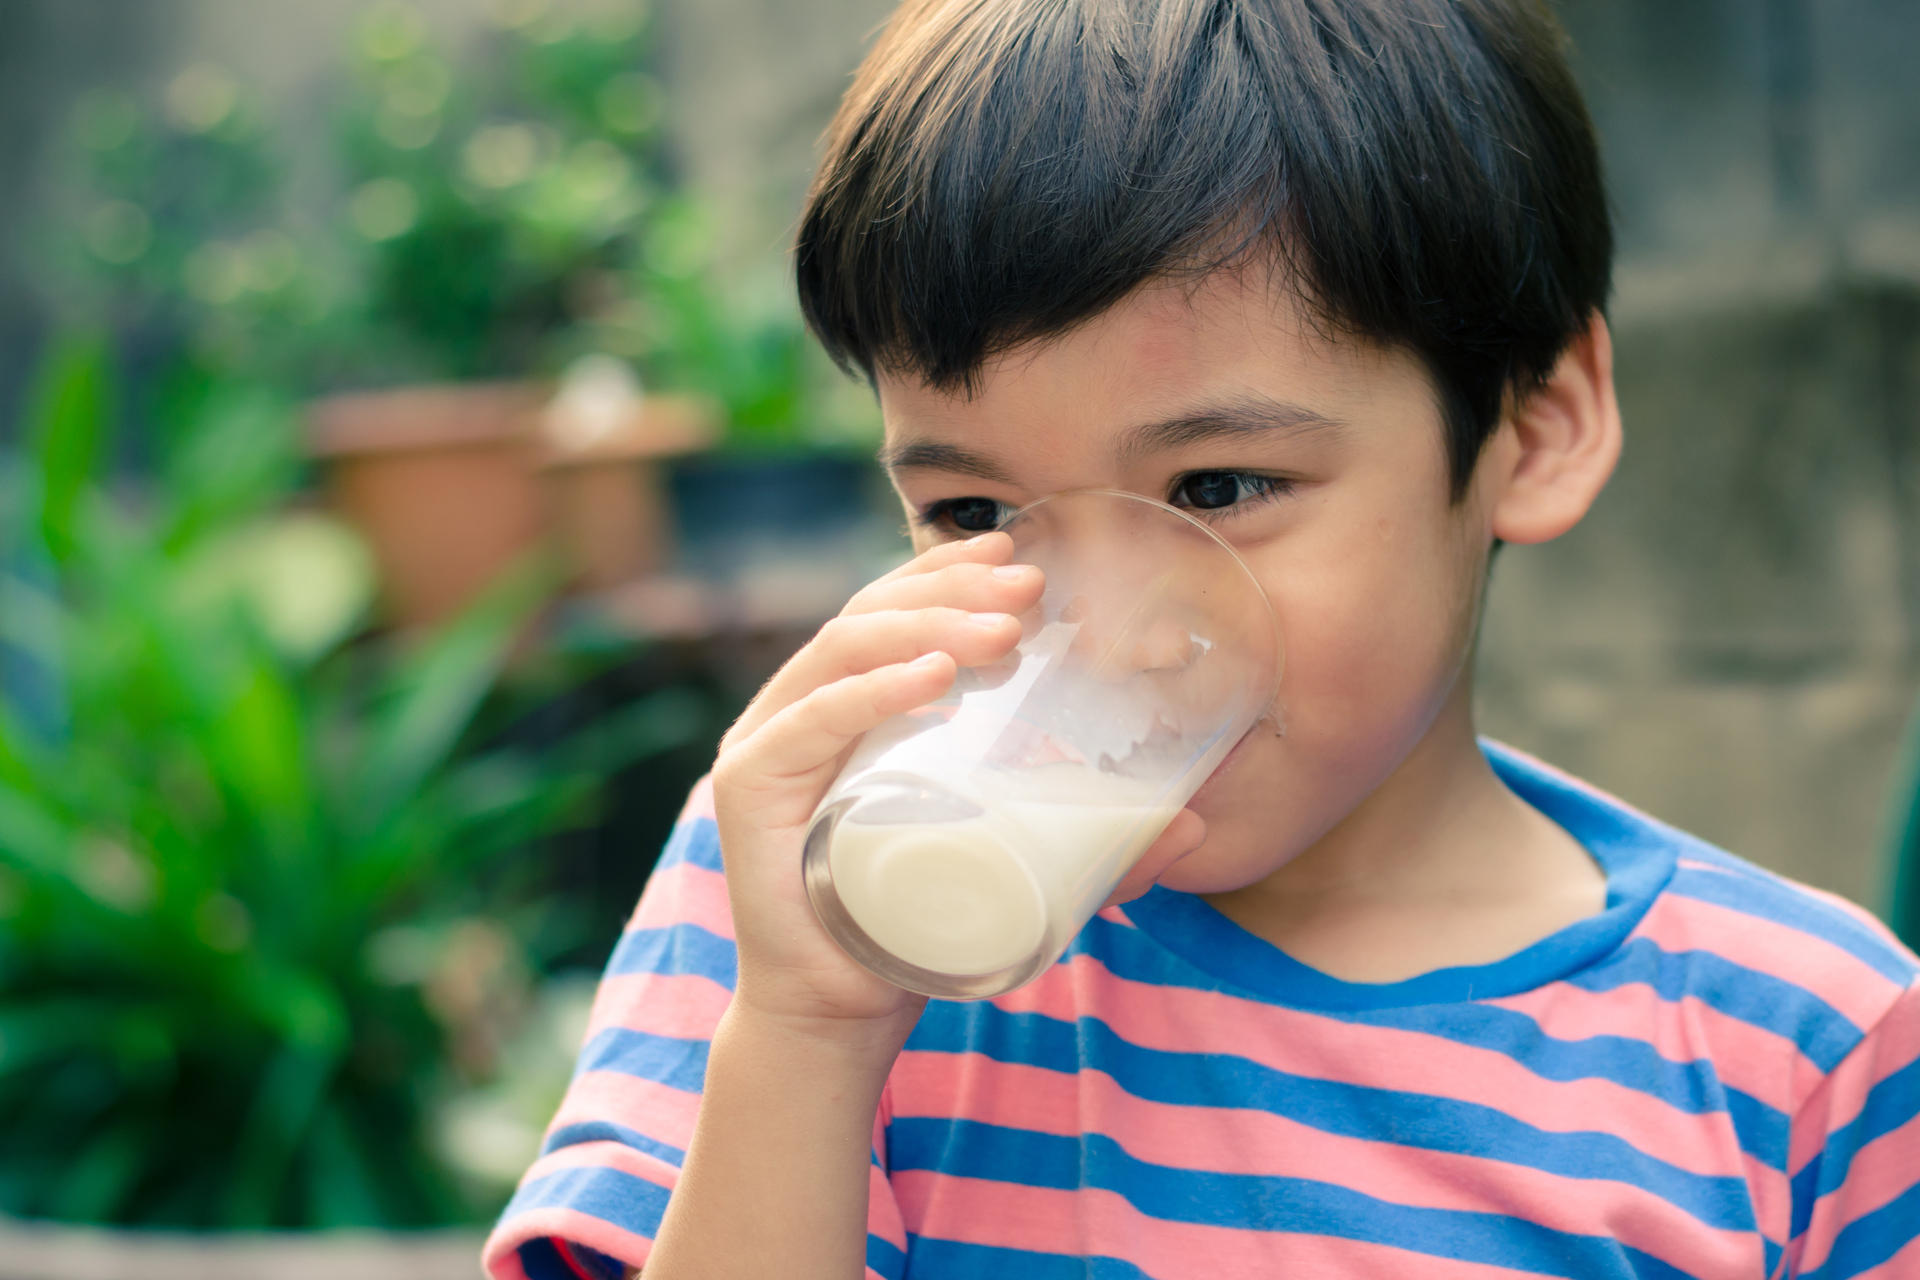 Is Milk Good For Children's Teeth?